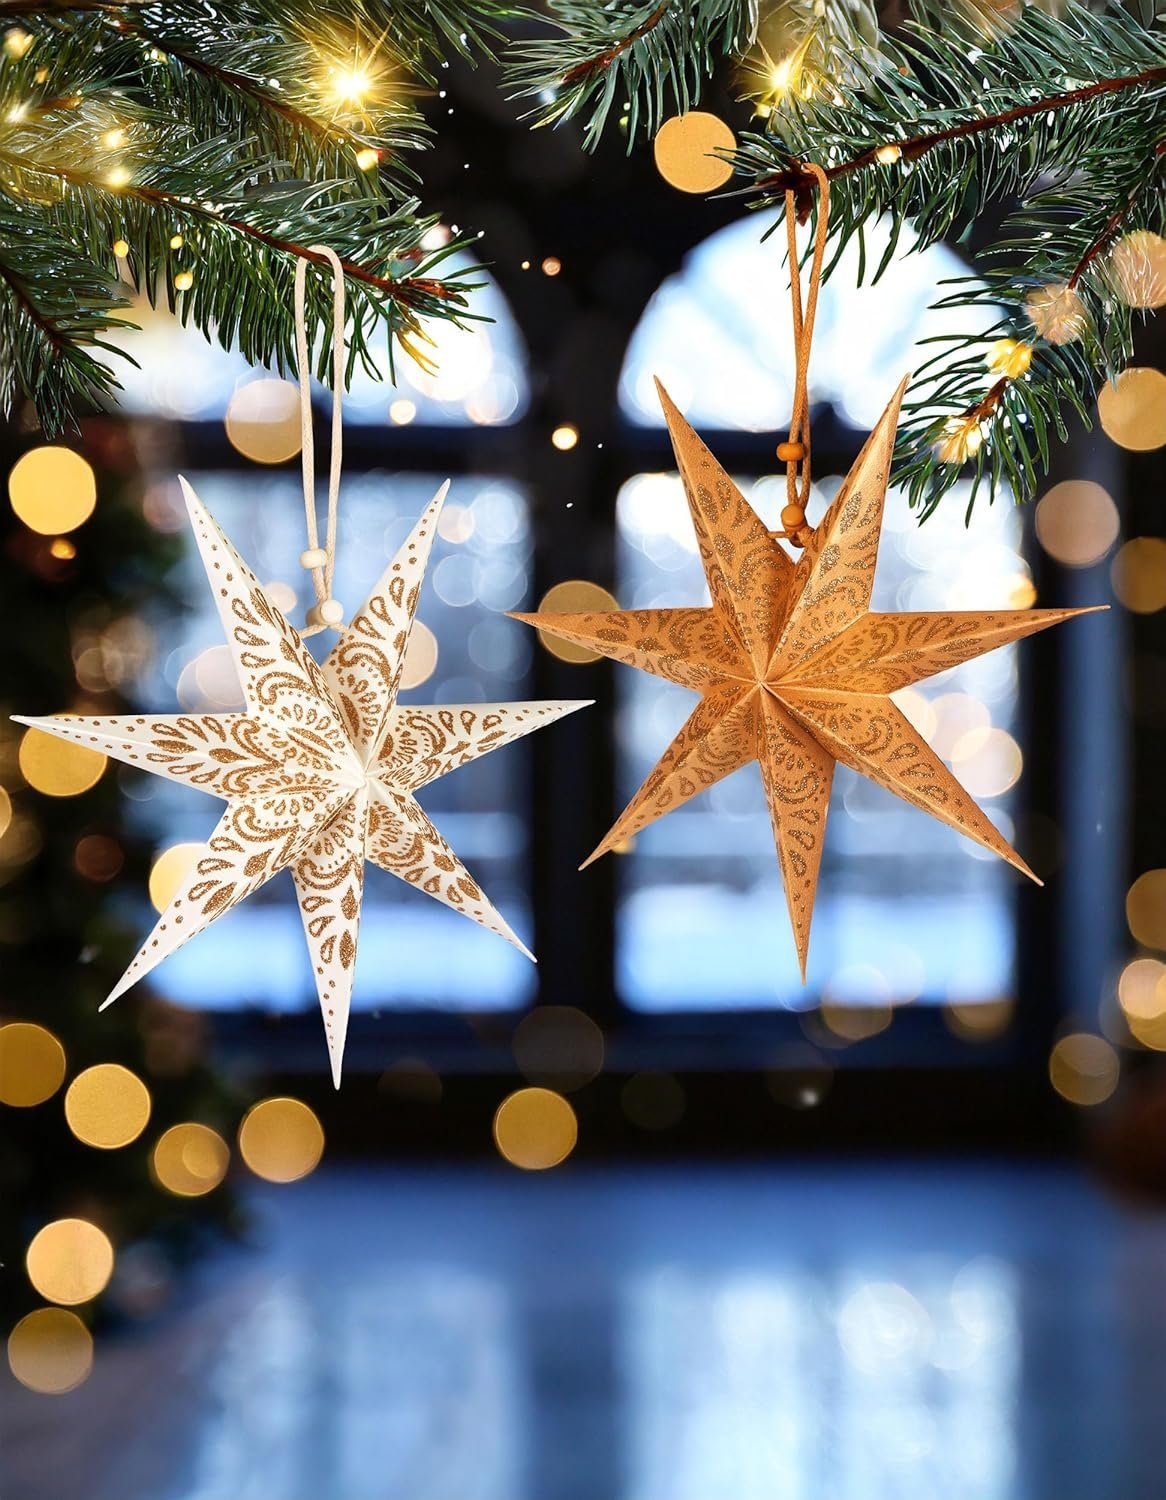 Christbaumschmuck Sterne, Weiß Papiersterne Weihnachtssterne Papier cm für Großer - 20 Weihnachten Dekoration Gold und Faltsterne Fenster 6 - und Weihnachtsbaum BRUBAKER